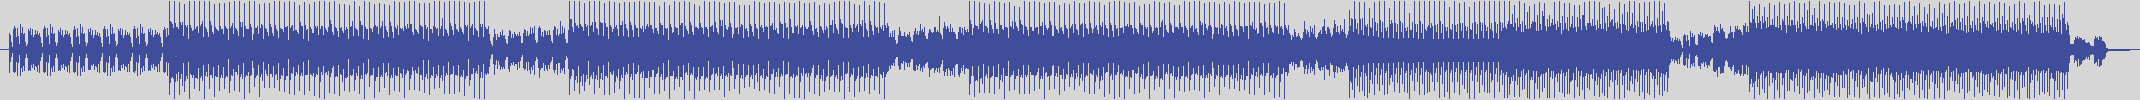 nf_boyz_records [NFY044] Something Coalition - Amoeba Garage [Original Mix] audio wave form